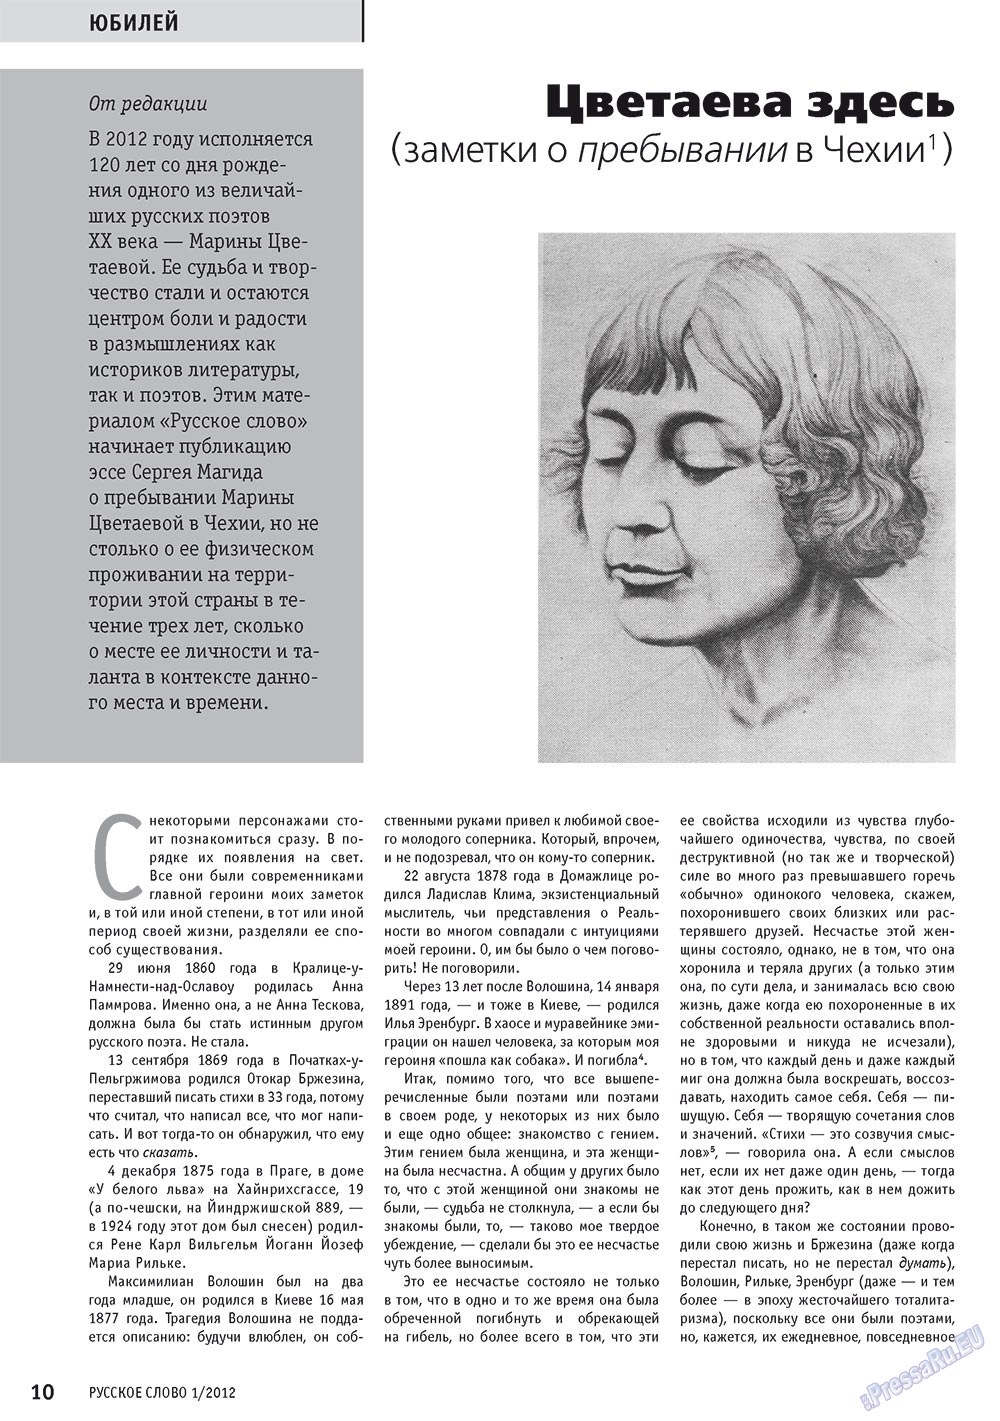 Русское слово, журнал. 2012 №1 стр.12